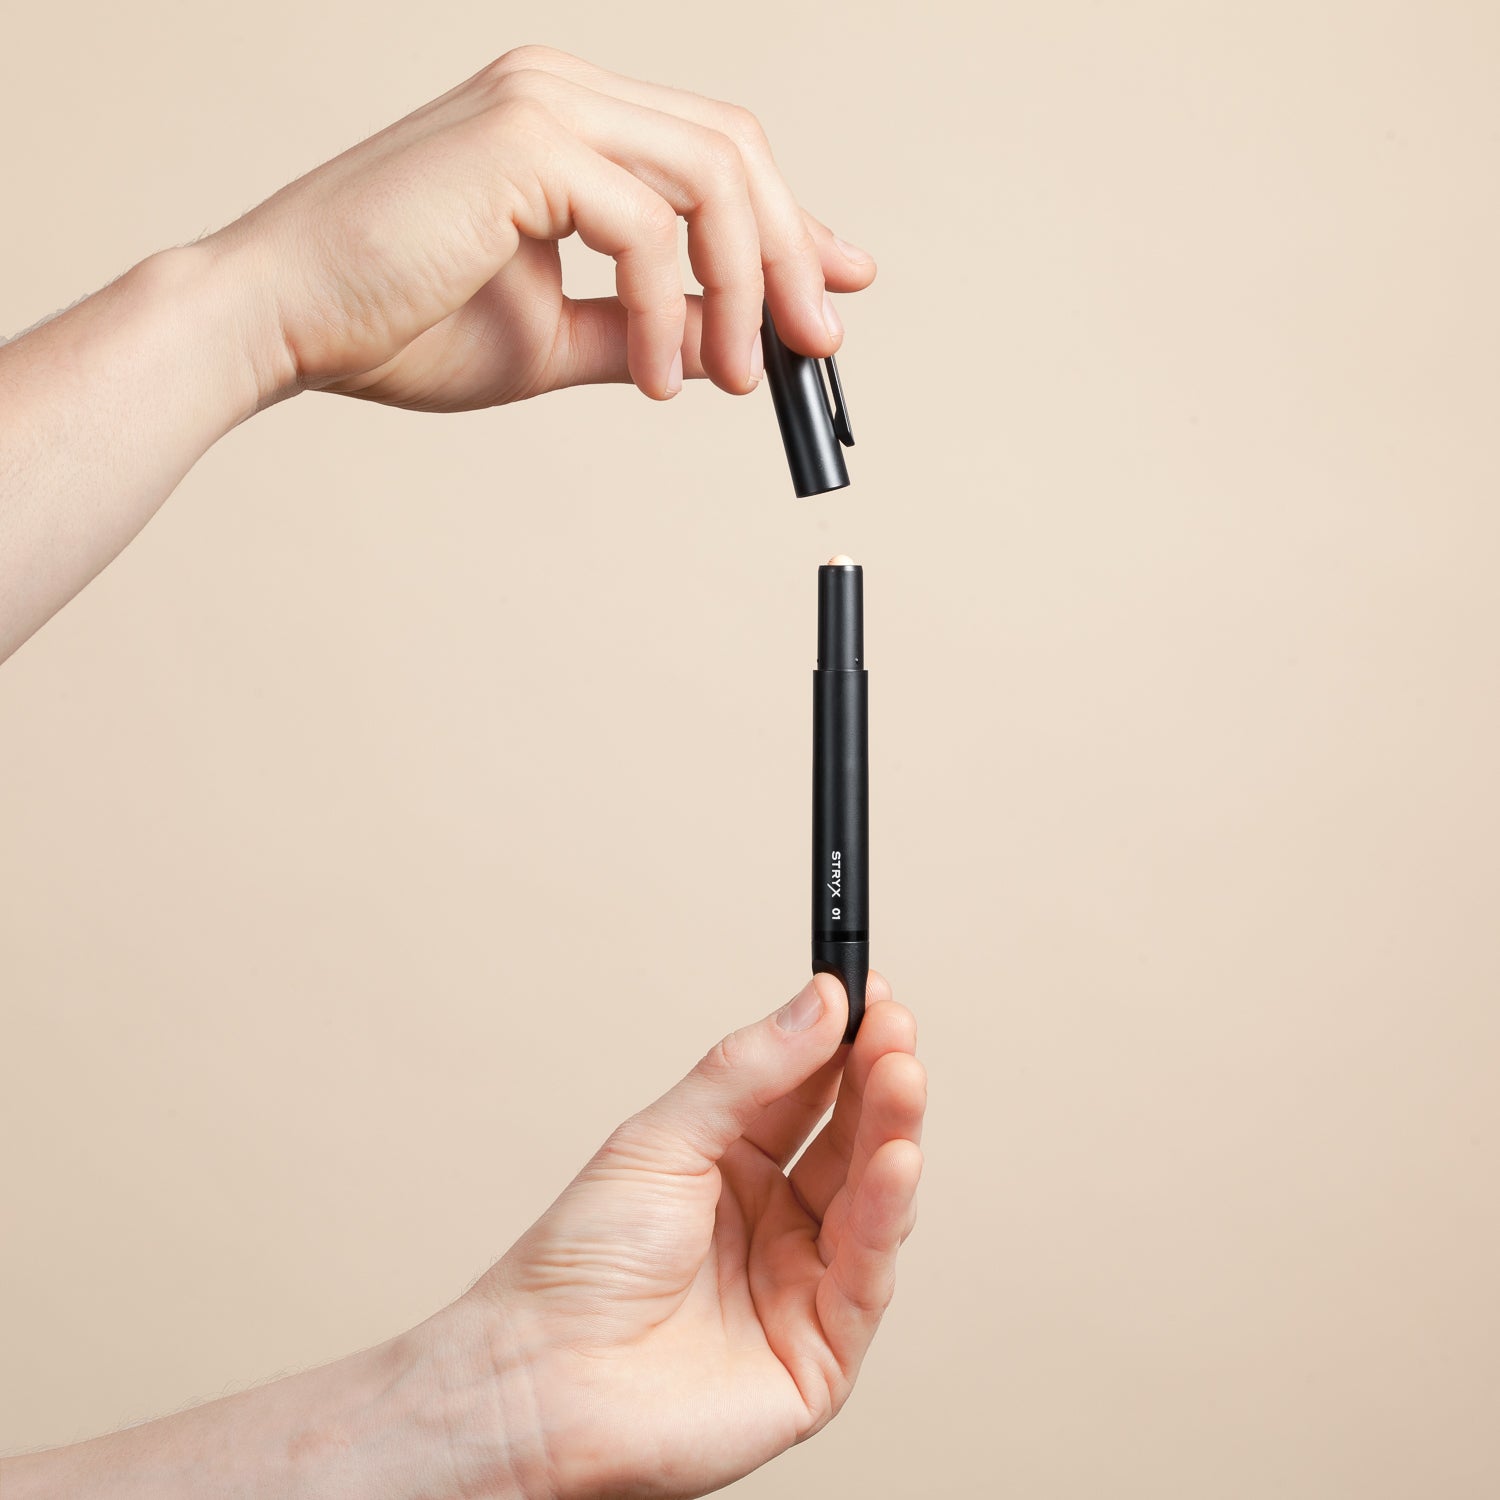 statisk Afvist Identificere Stryx | Buy The #1 Concealer Pen For Men | Acne, Scars